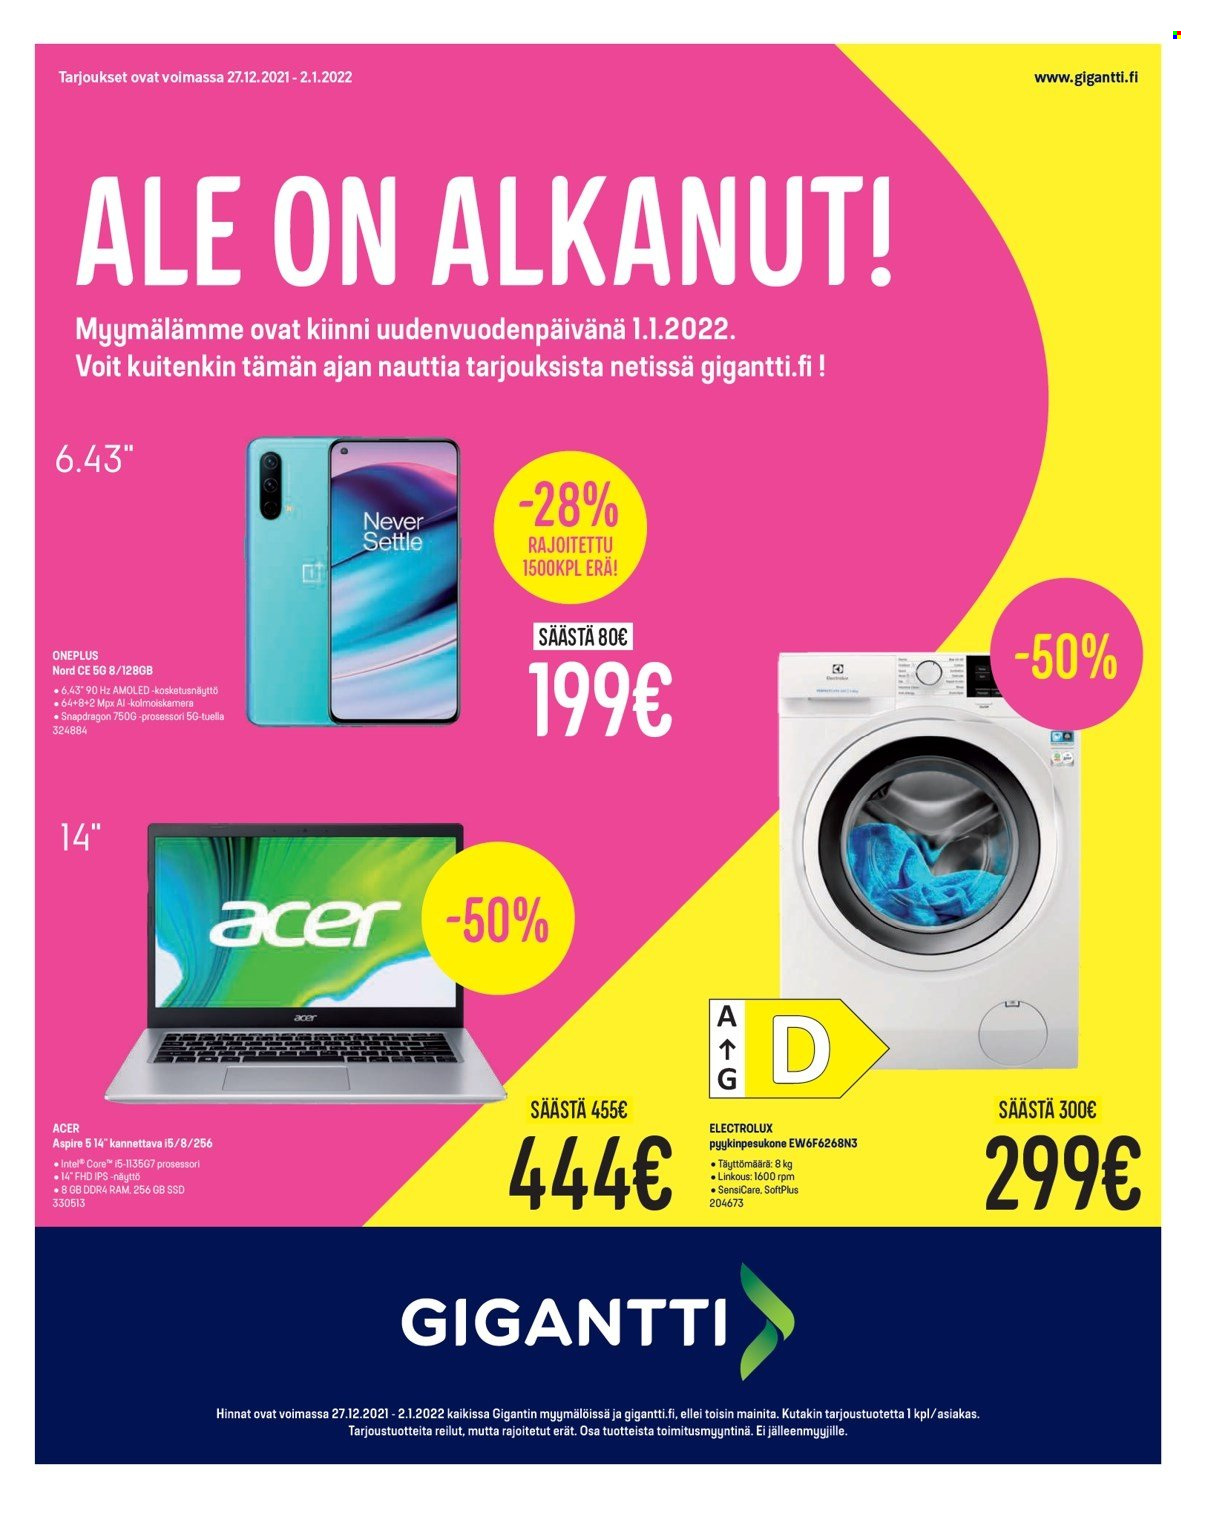 thumbnail - Gigantti tarjoukset  - 27.12.2021 - 02.01.2022 - Tarjoustuotteet - Acer, Intel, Electrolux, pyykinpesukone. Sivu 1.